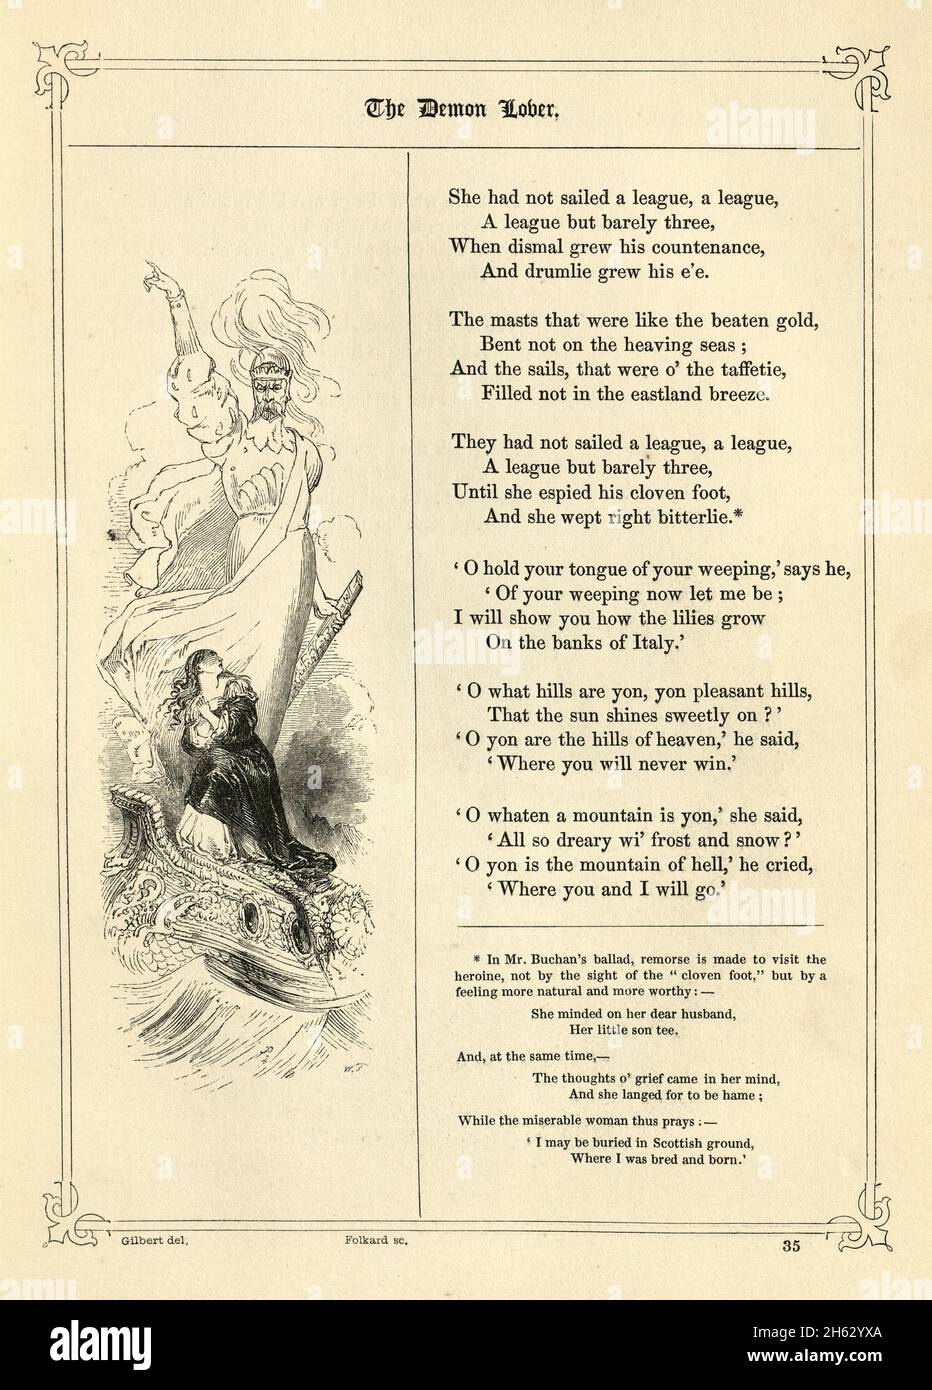 Buch der britischen Balladen, der Dämon-Liebhaber, Dämon, viktorianisches 19. Jahrhundert. Eine beliebte schottische Ballade aus der Zeit um 1685 Stockfoto